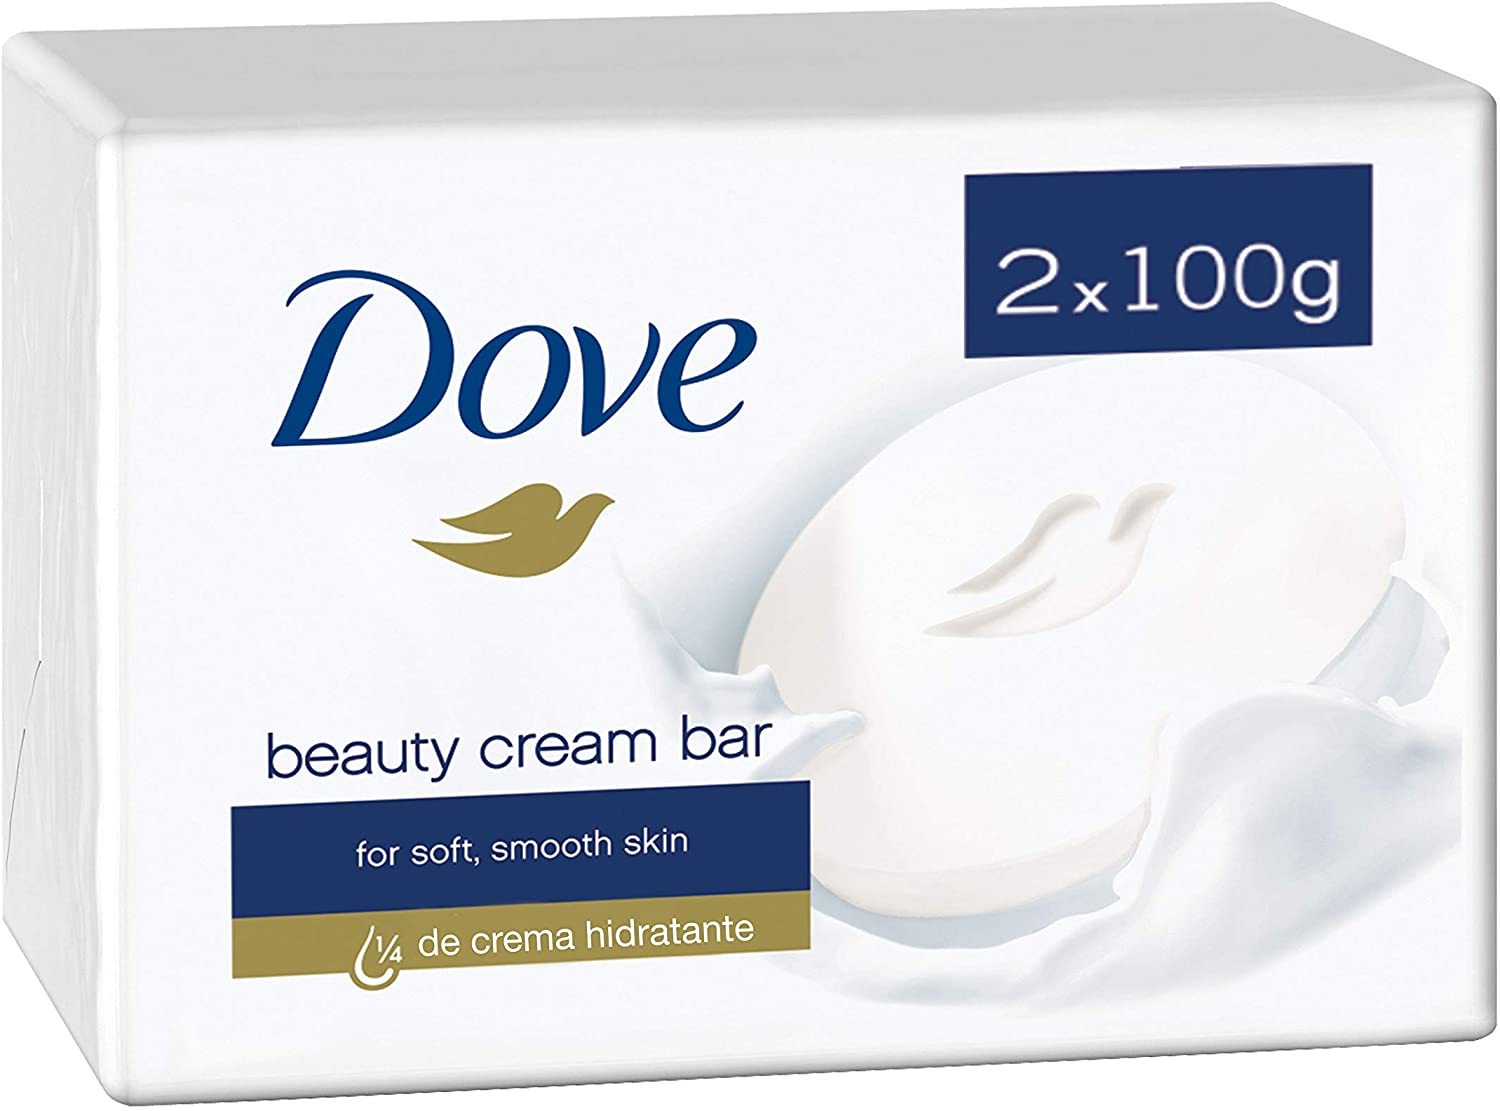 dove_beauty_cream_2x100